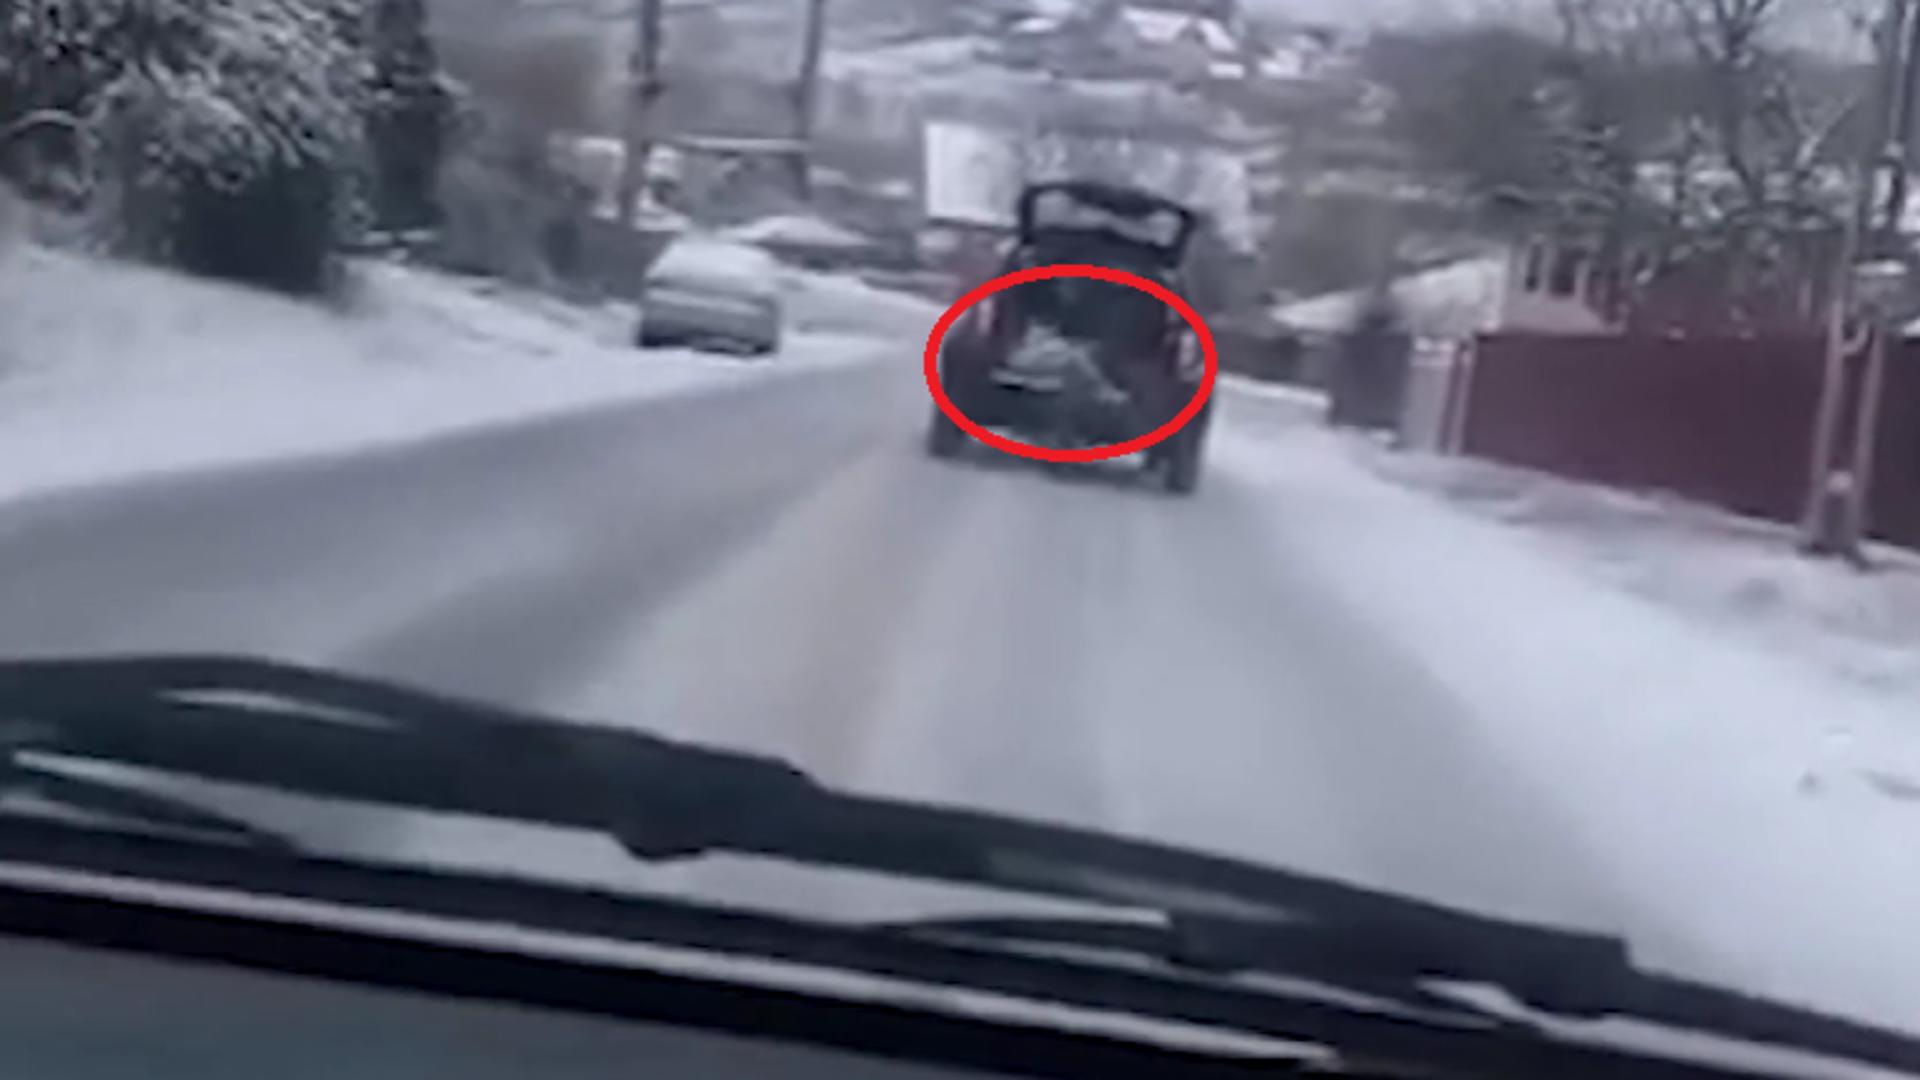 Pompier, surprins în timp ce aruncă sare pe drum din portbagajul unei mașini! – Imagini halucinante la Iași